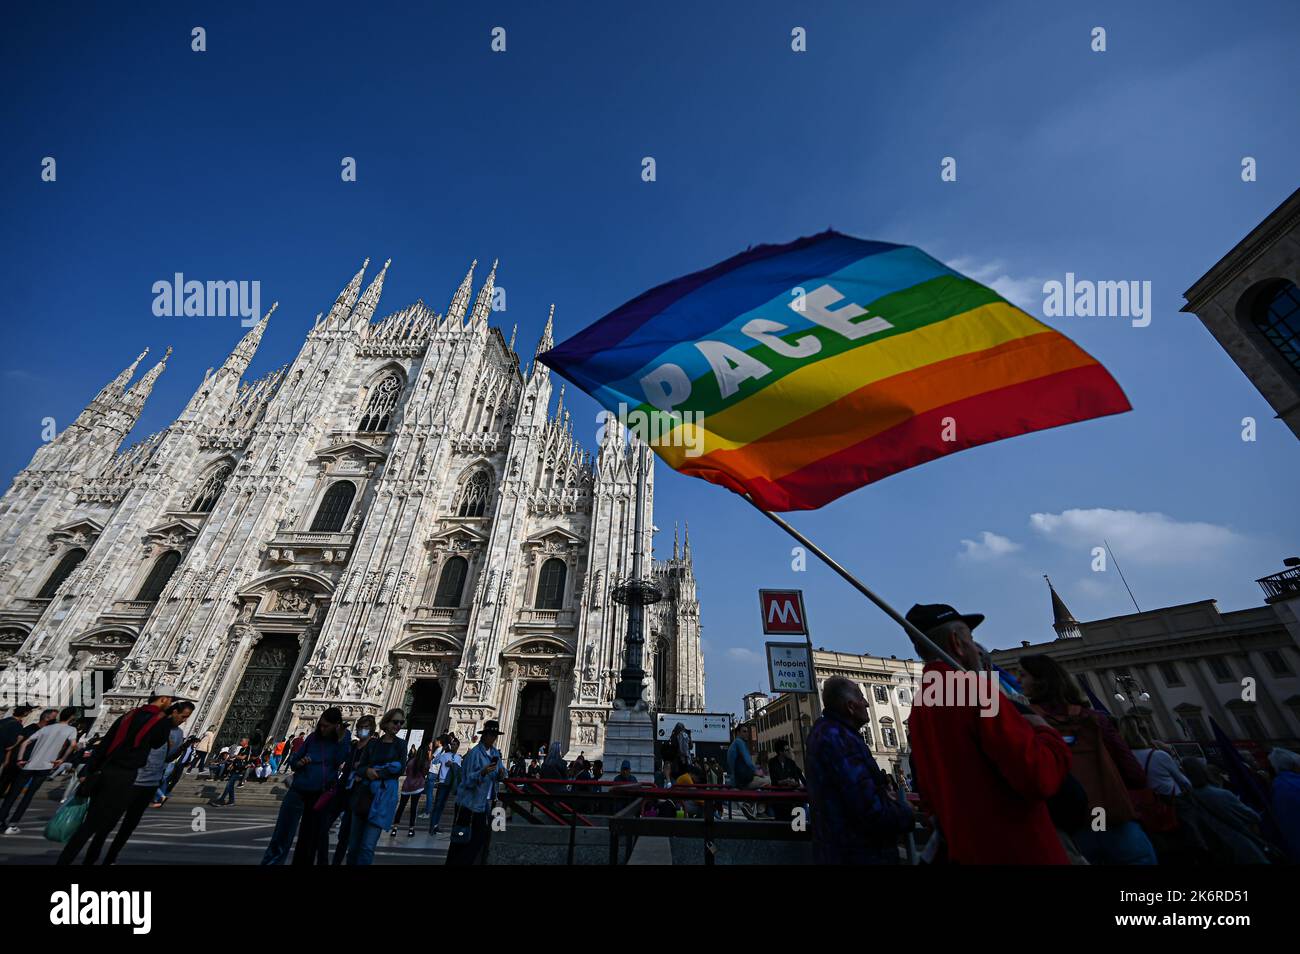 Un homme tient un drapeau de la paix devant la cathédrale Duomo lors d'une démonstration organisée par Unione Popolare à Milan, Italie sur 15 octobre 2022 Credit: Piero Cruciatti/Alay Live News Banque D'Images